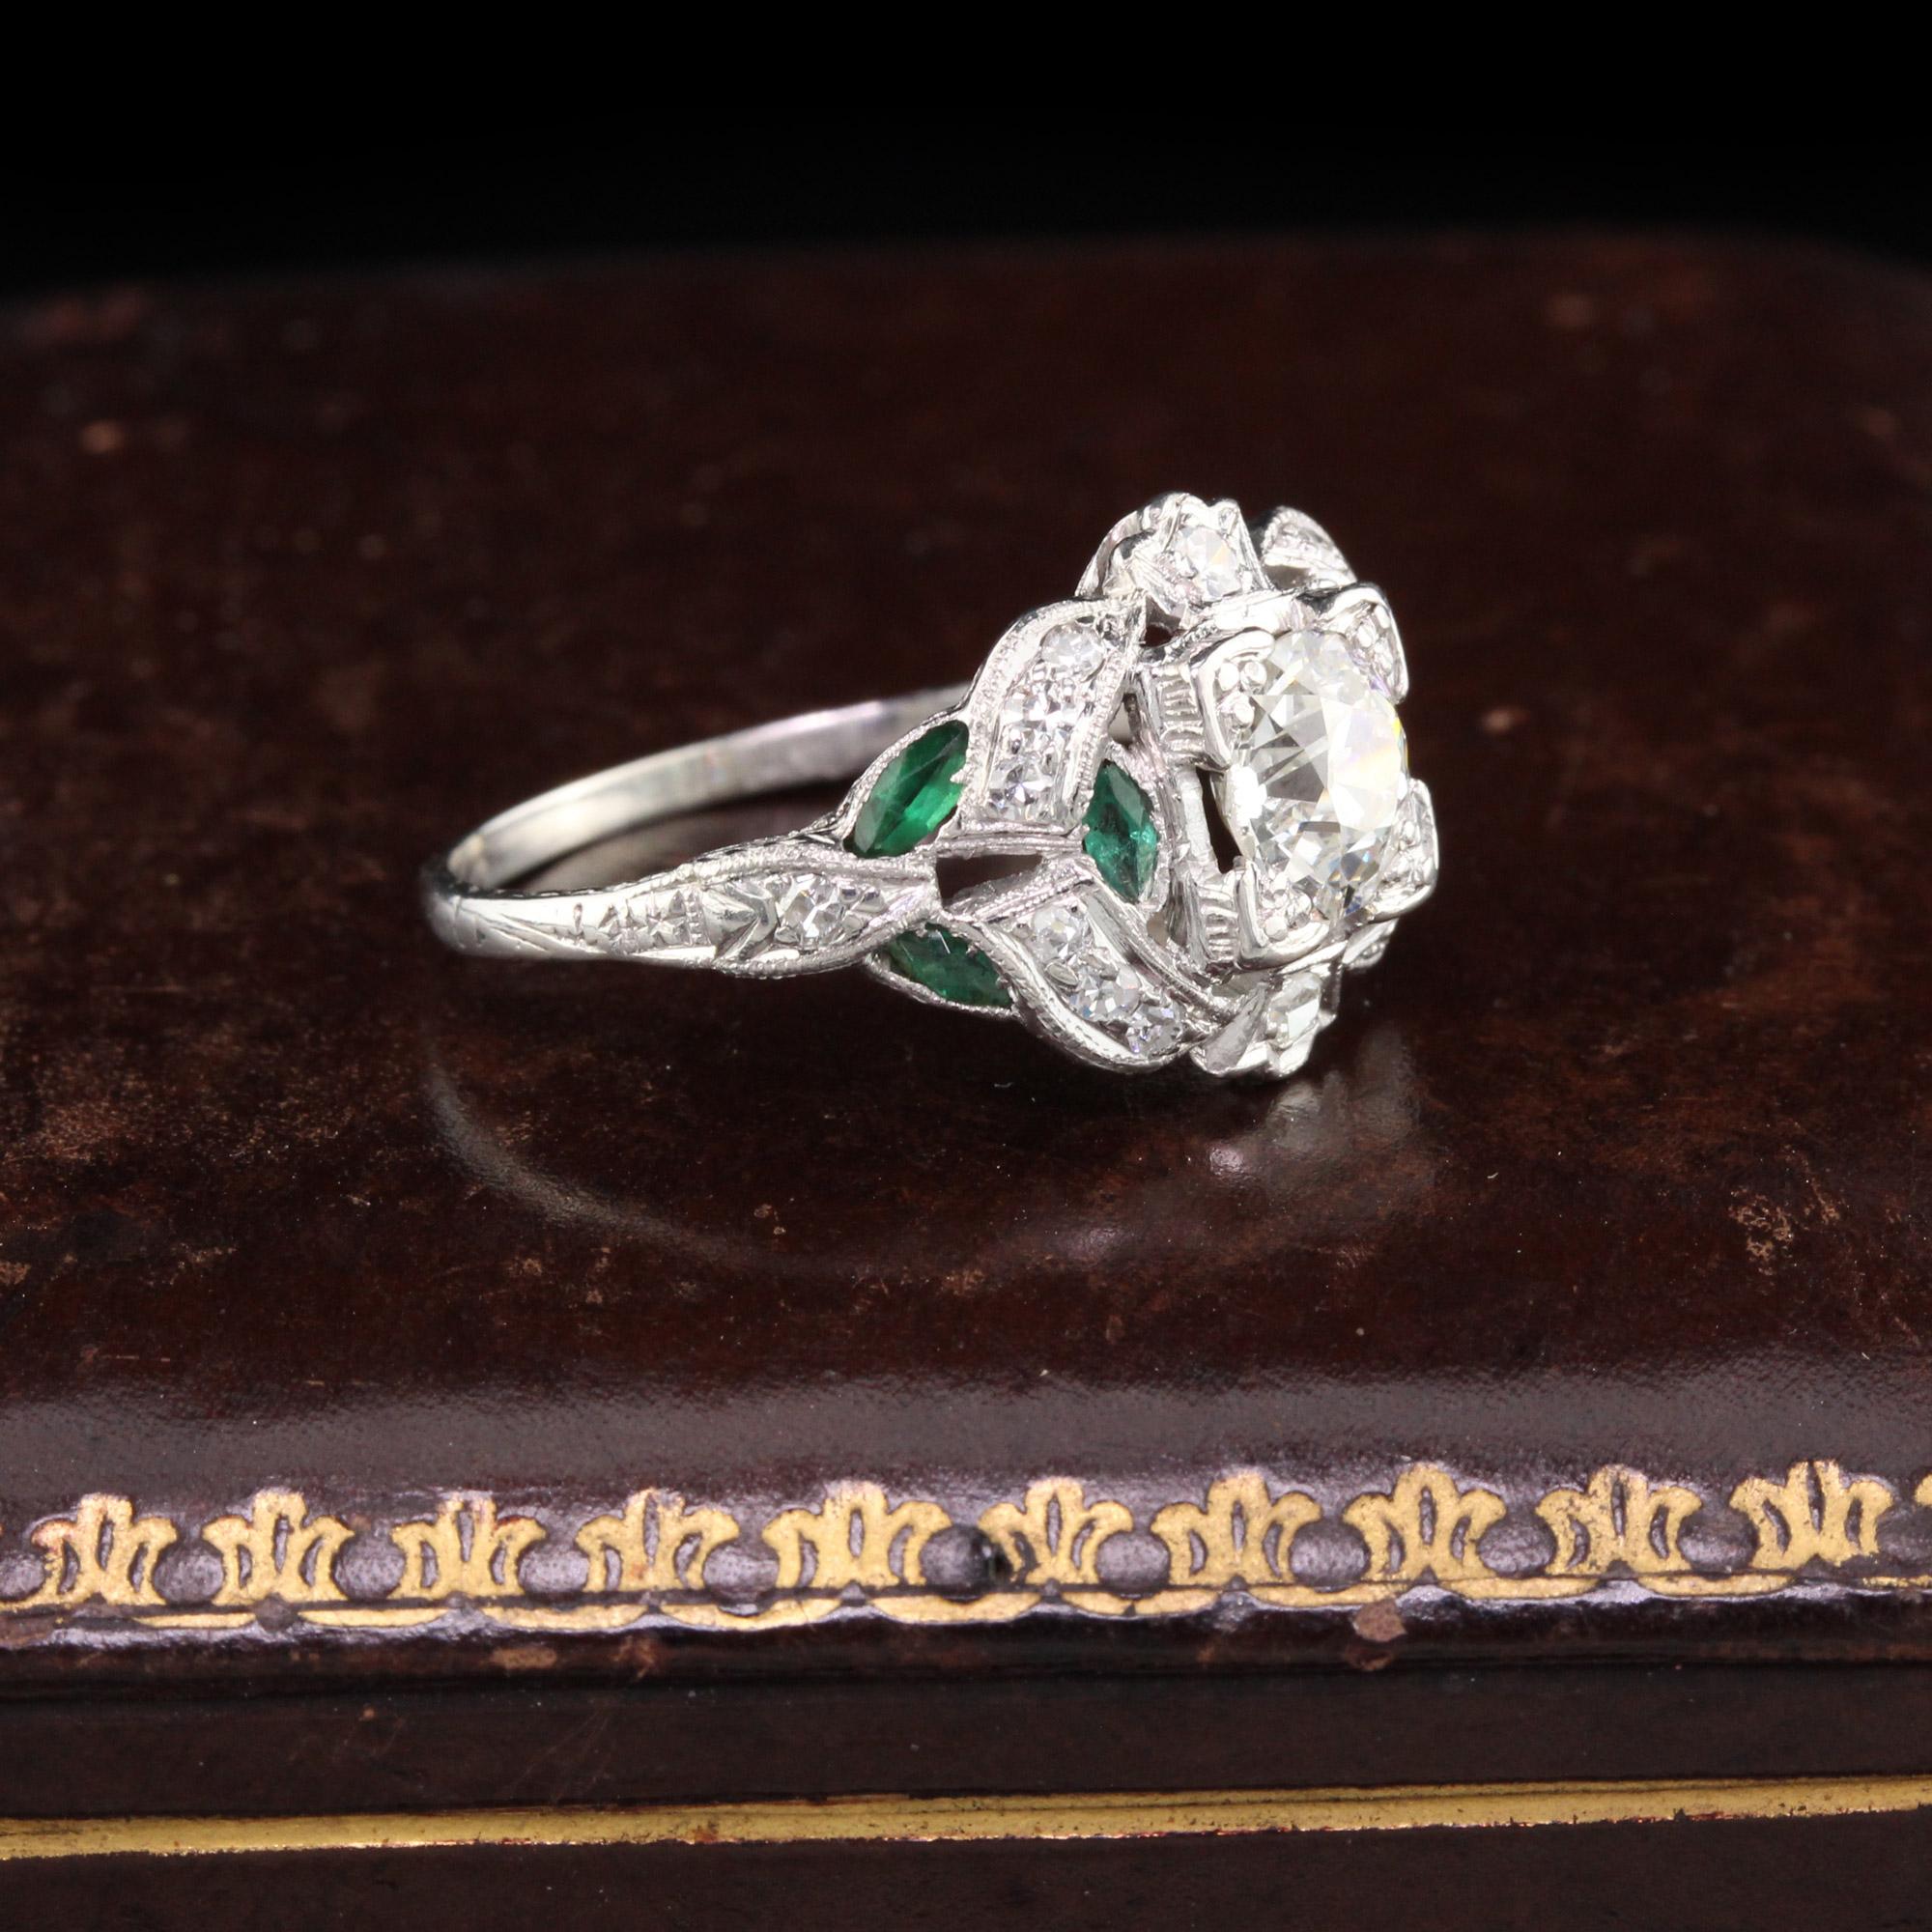 Old European Cut Antique Art Deco Platinum Diamond and Emerald Engagement Ring